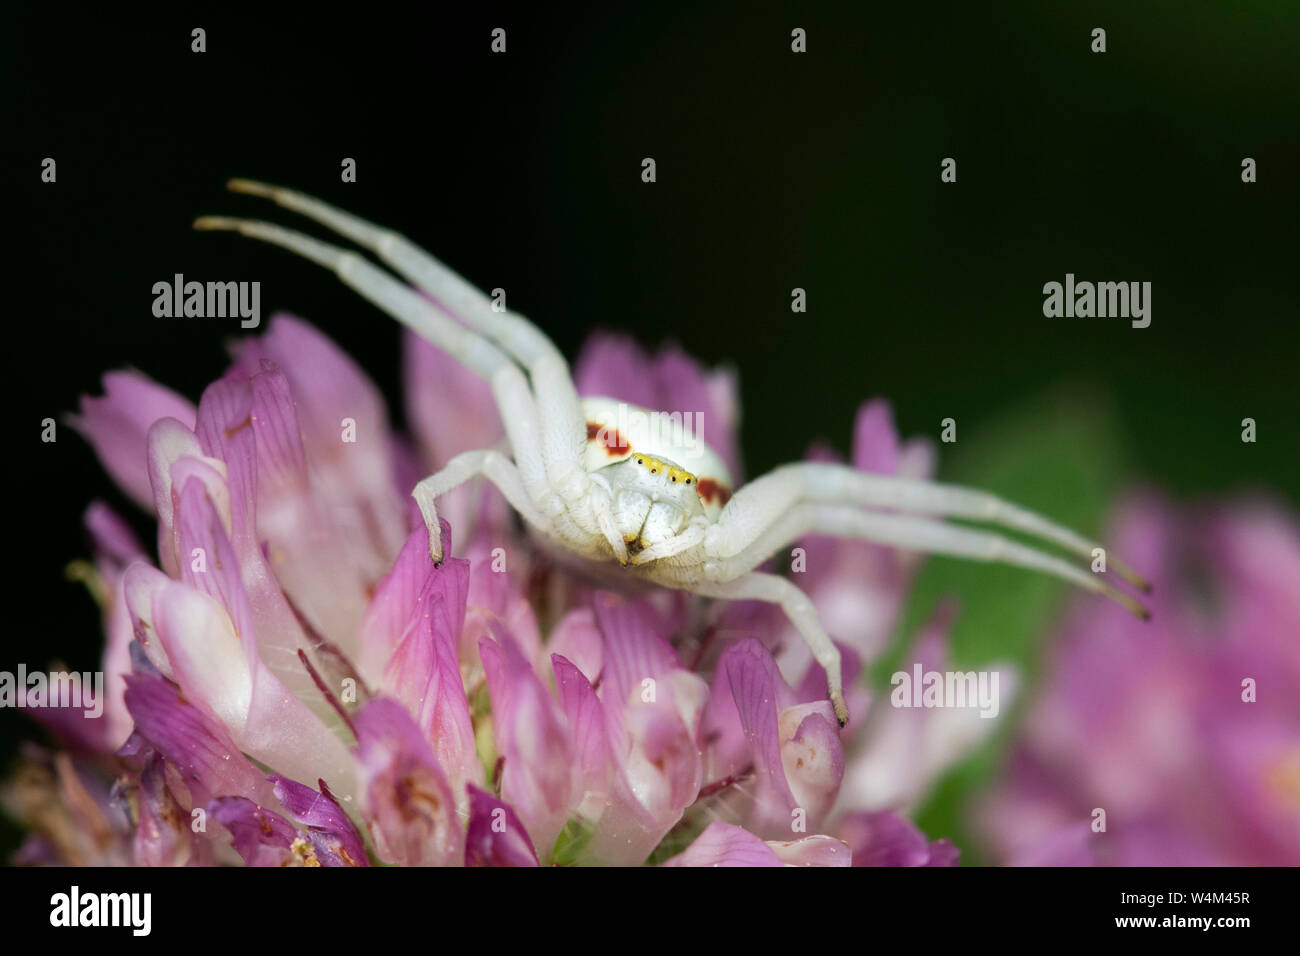 Araignée crabe Misumena vatia, Denge, Woods, KENT UK, femme assis dans l'attente de proie sur fleur, jambes avant ouvert ébrasés Banque D'Images